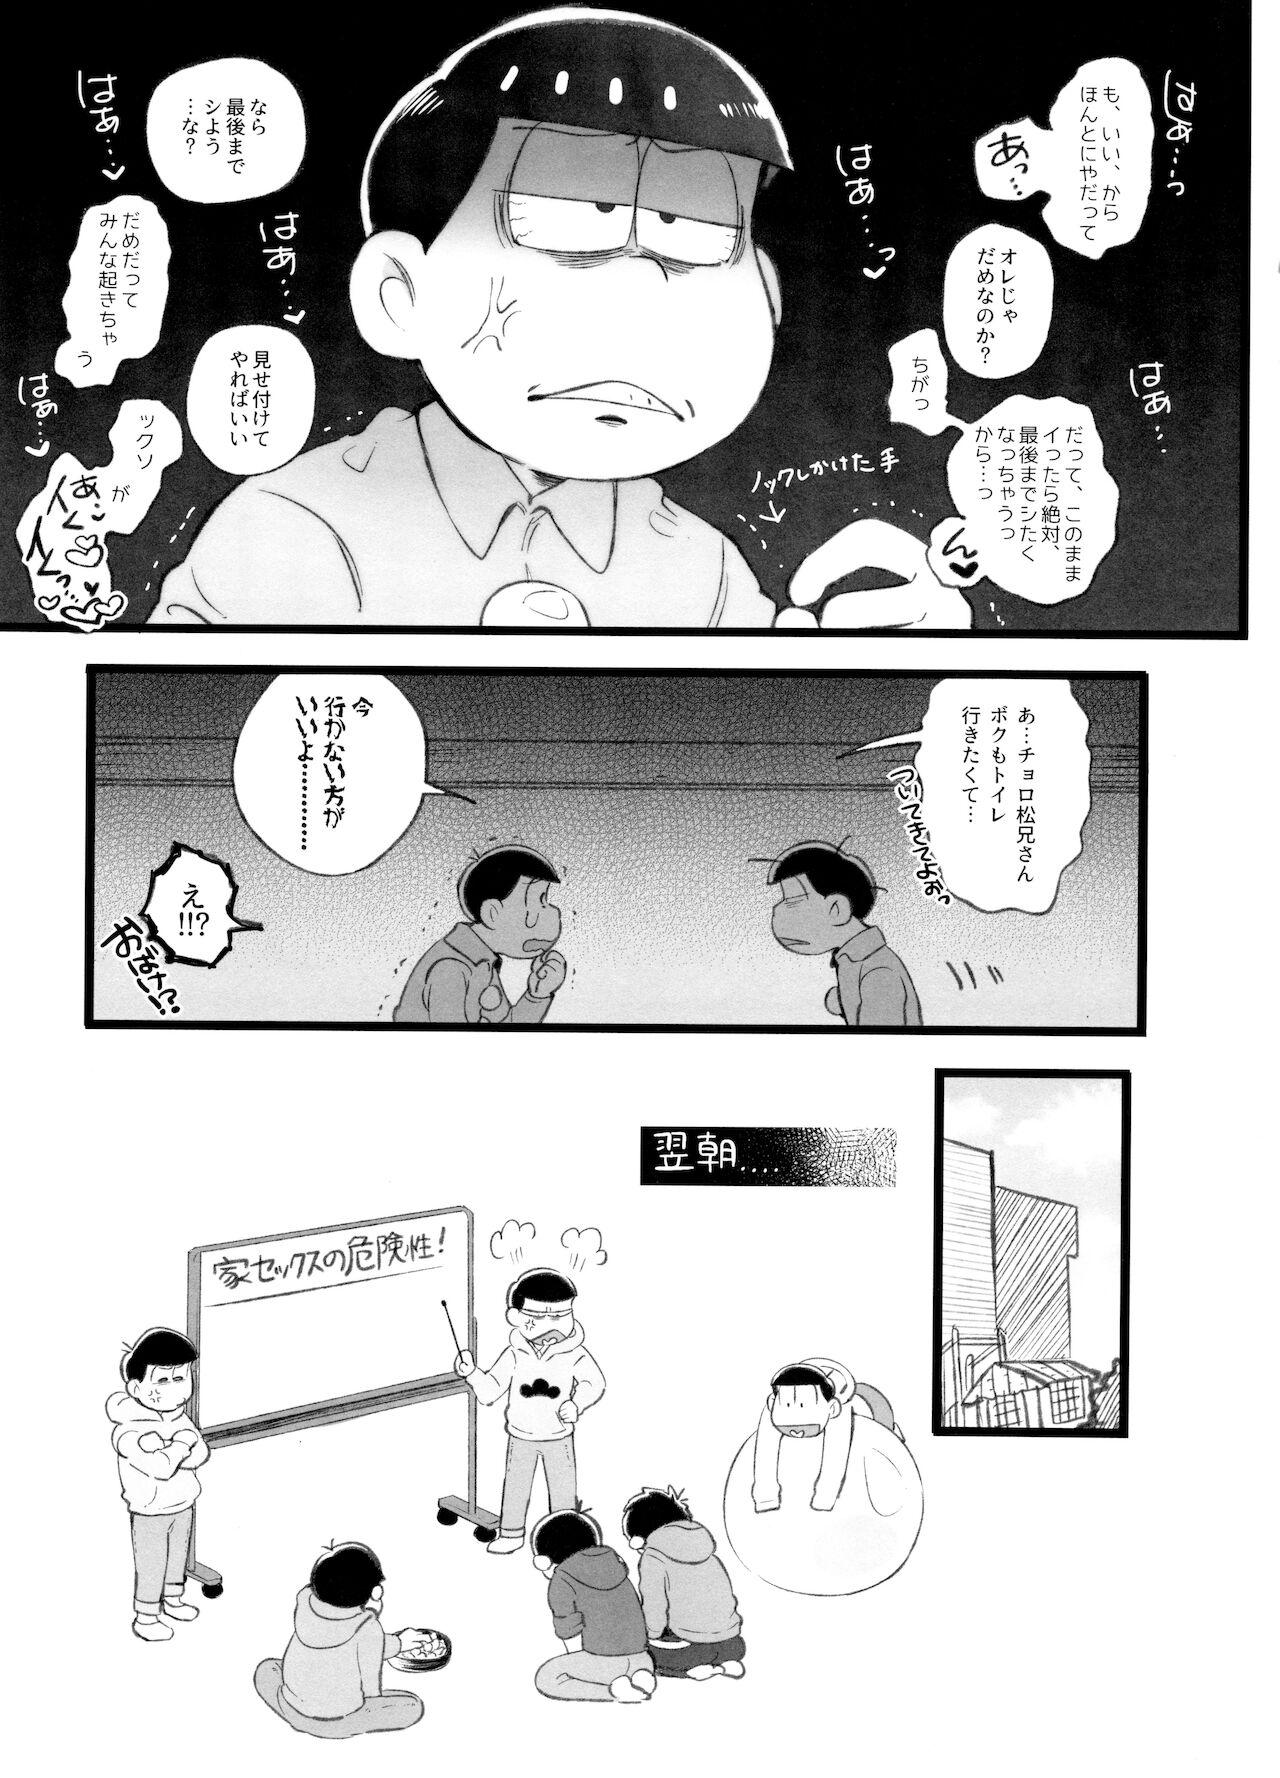 Kahou 10-ji Yon no Omake Hon + Andante no Koufukuron Gojitsu Manga 4